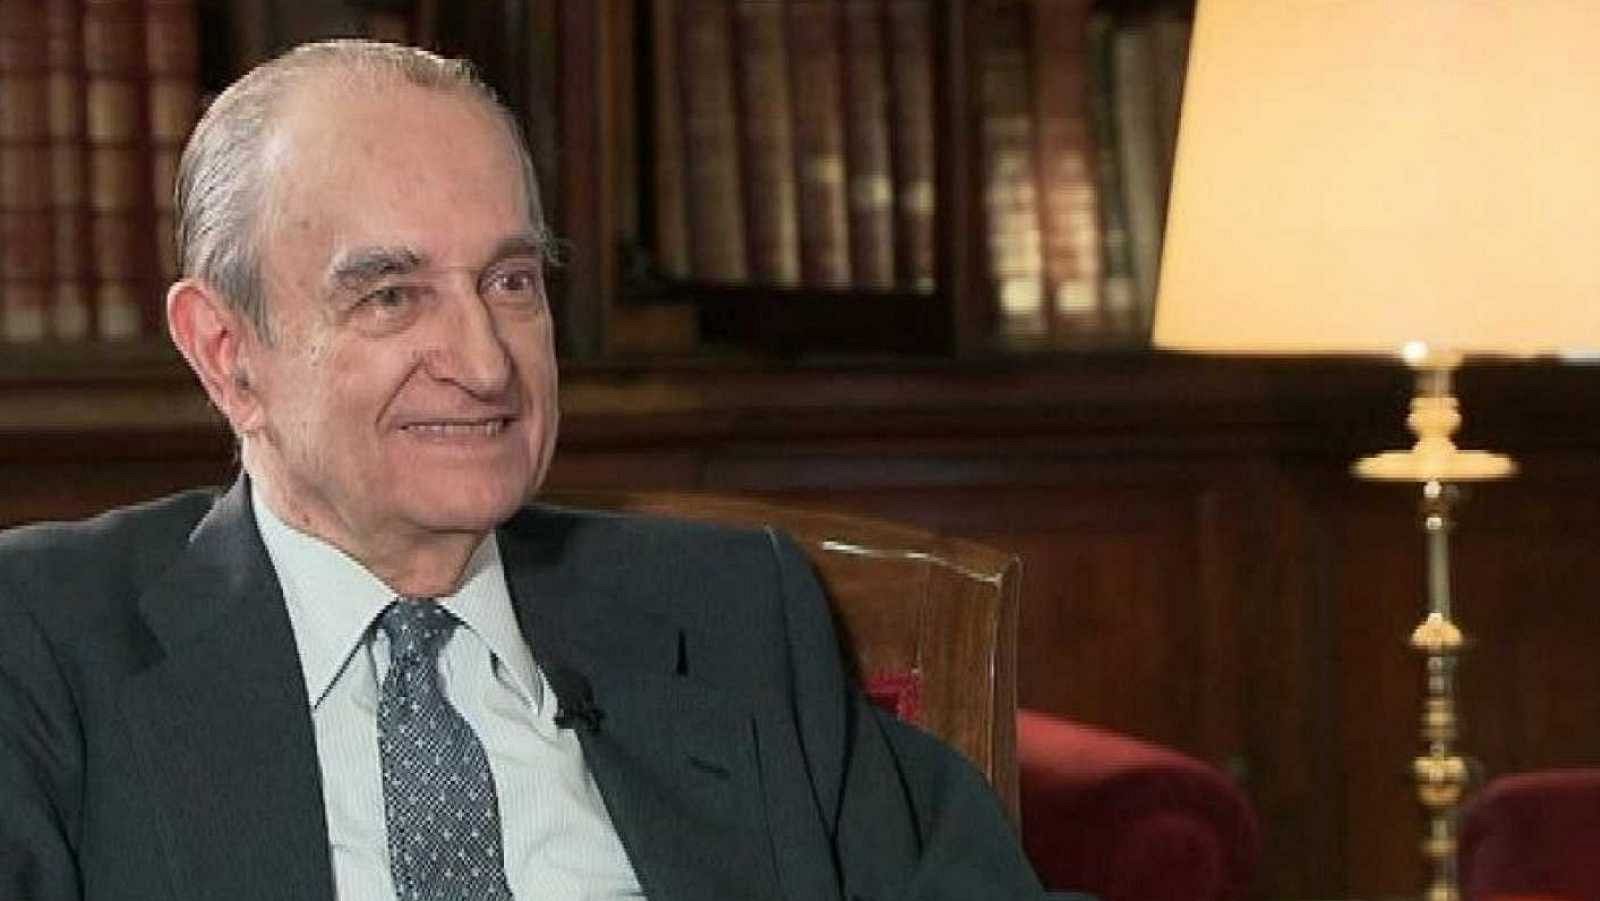  Fallece Landelino Lavilla, ministro de Justicia con Suárez y presidente del Congreso durante el 23-F